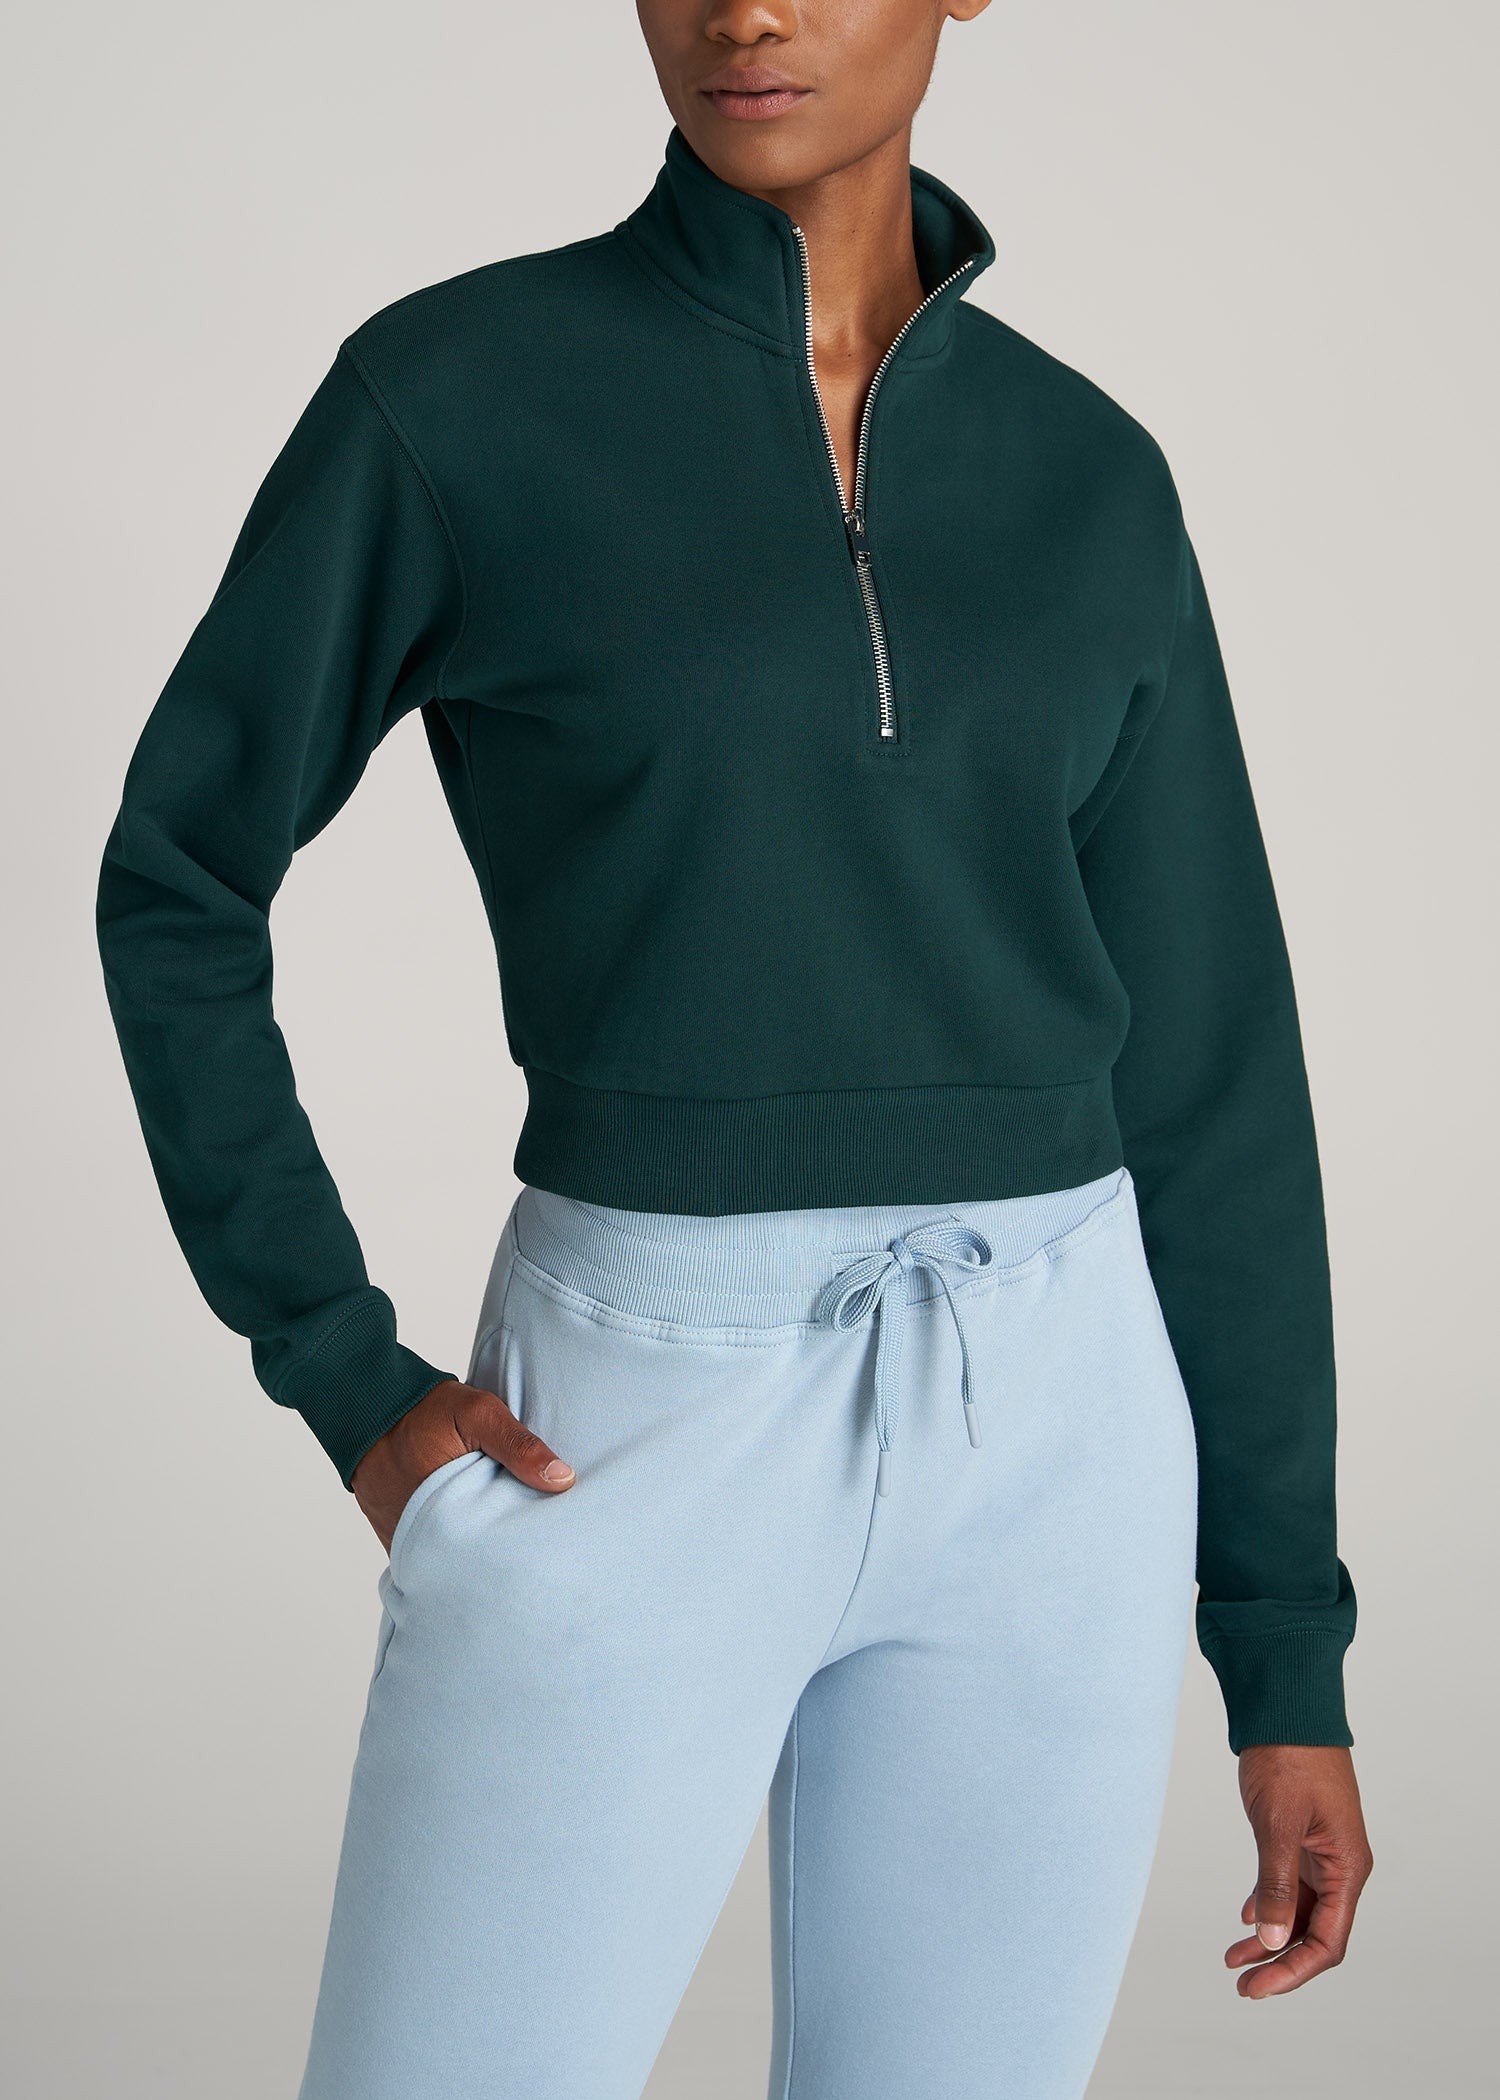 Wearever Fleece Cropped Garment Dye Half Zip Women's Tall Sweatshirt in  Emerald